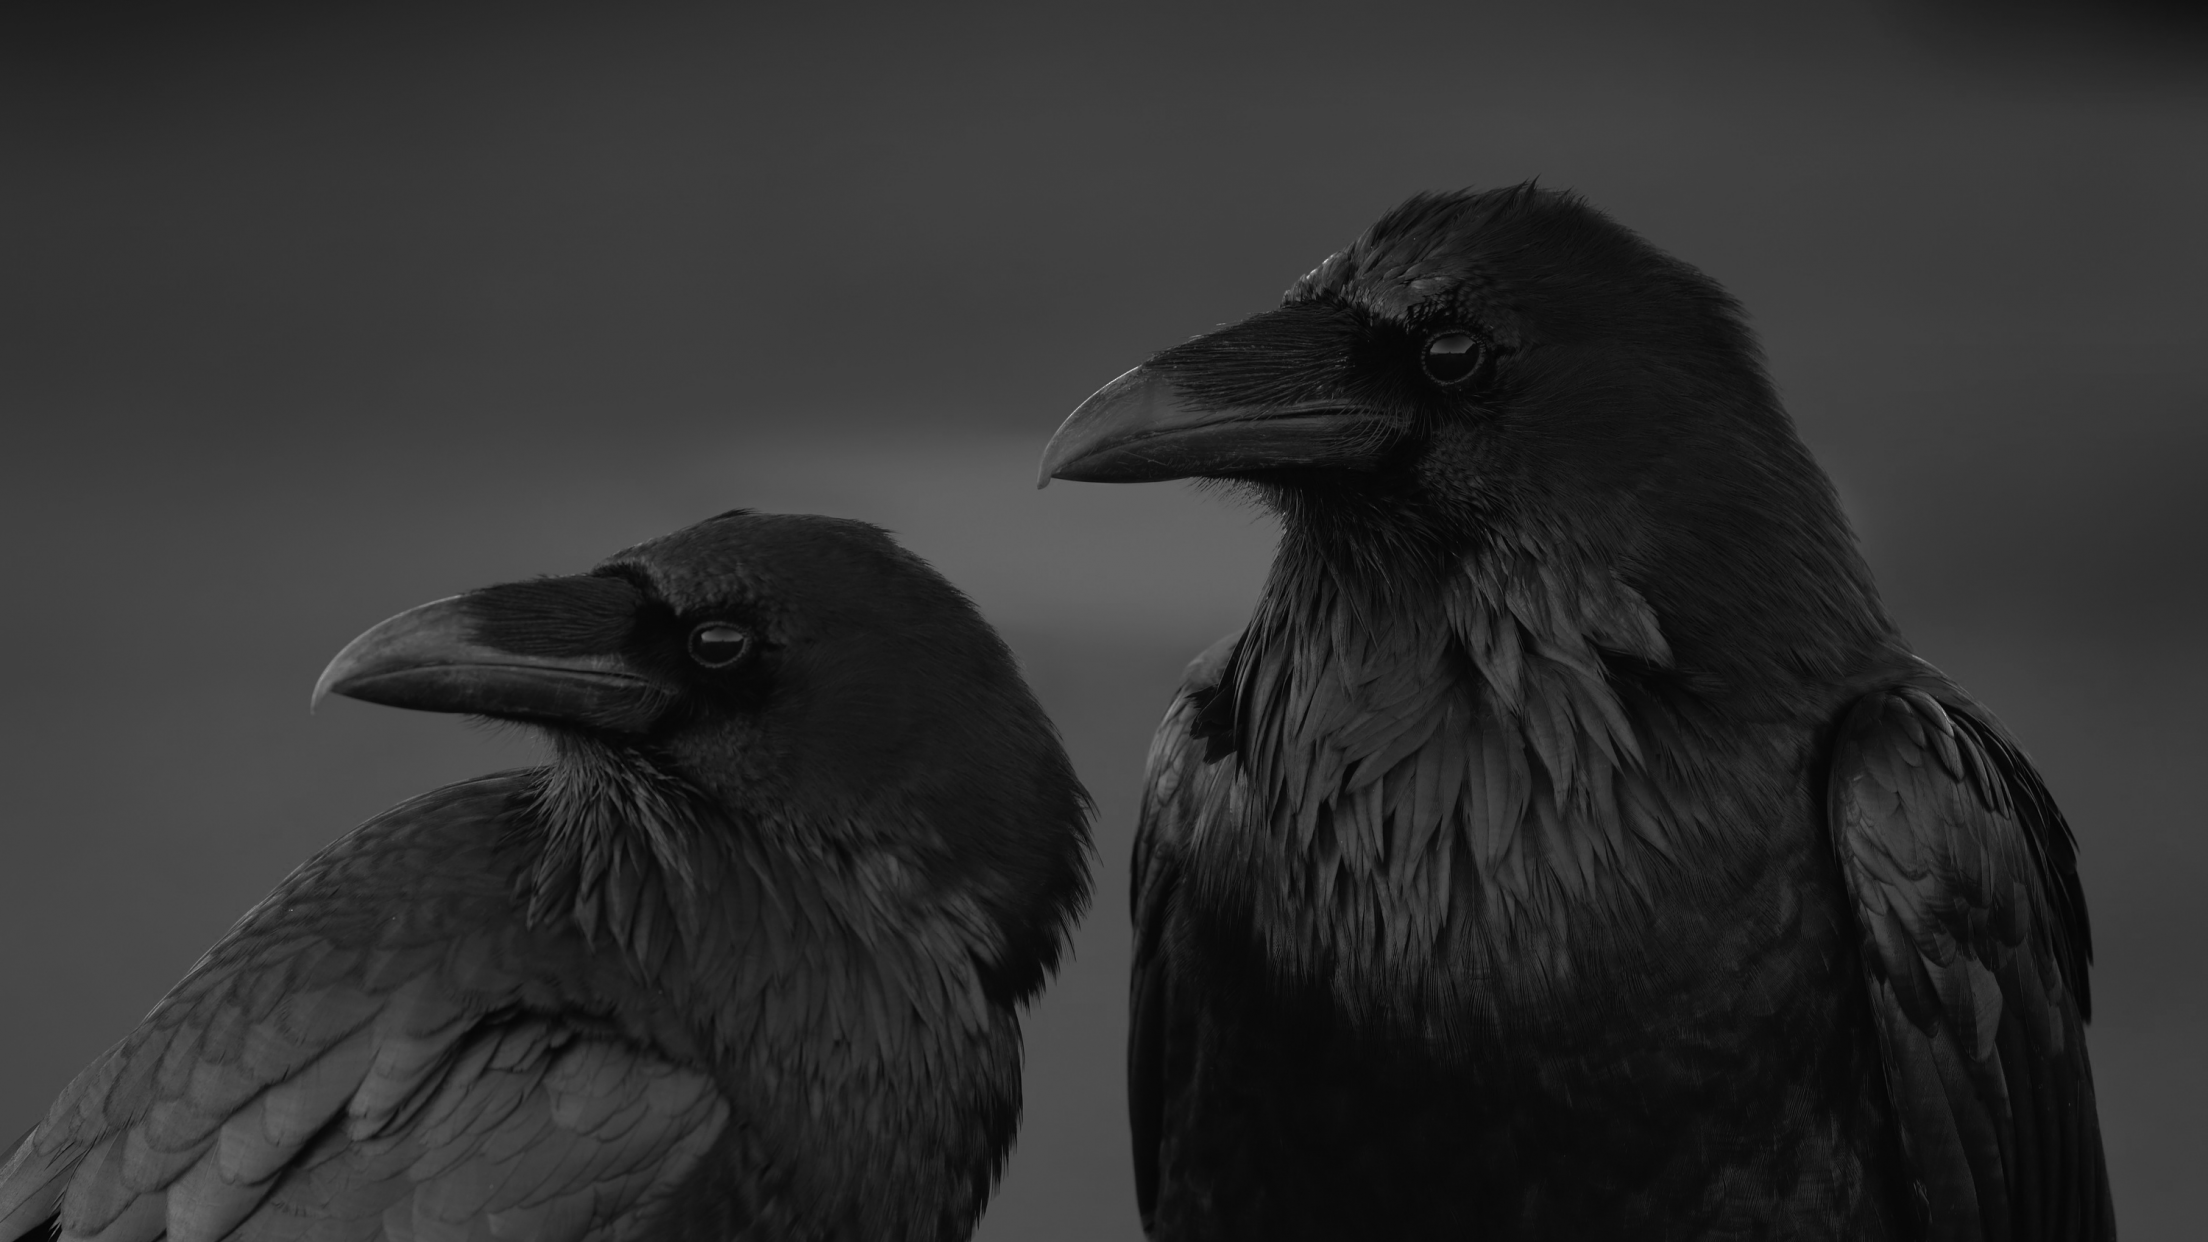 Two Ravens Hd - 2208x1242 Wallpaper 